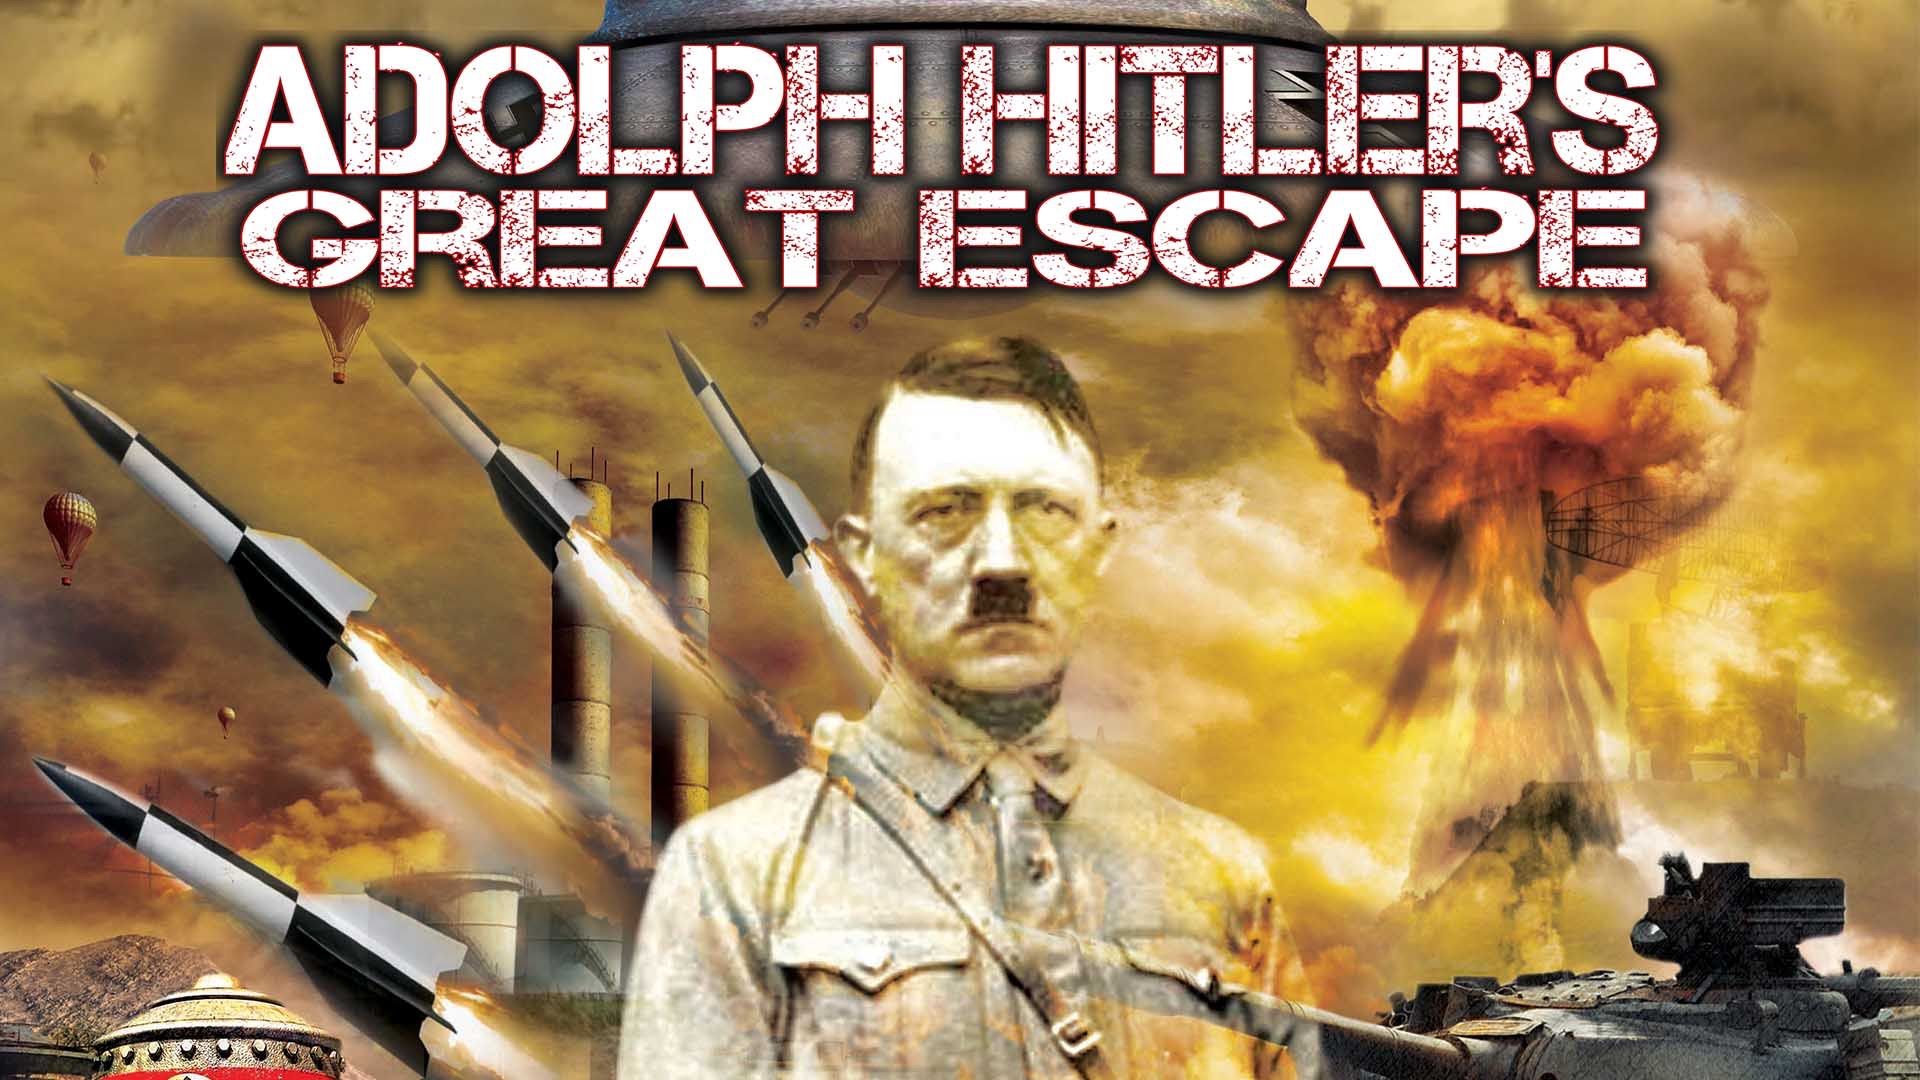 Adolf Hitler's Great Escape Backdrop